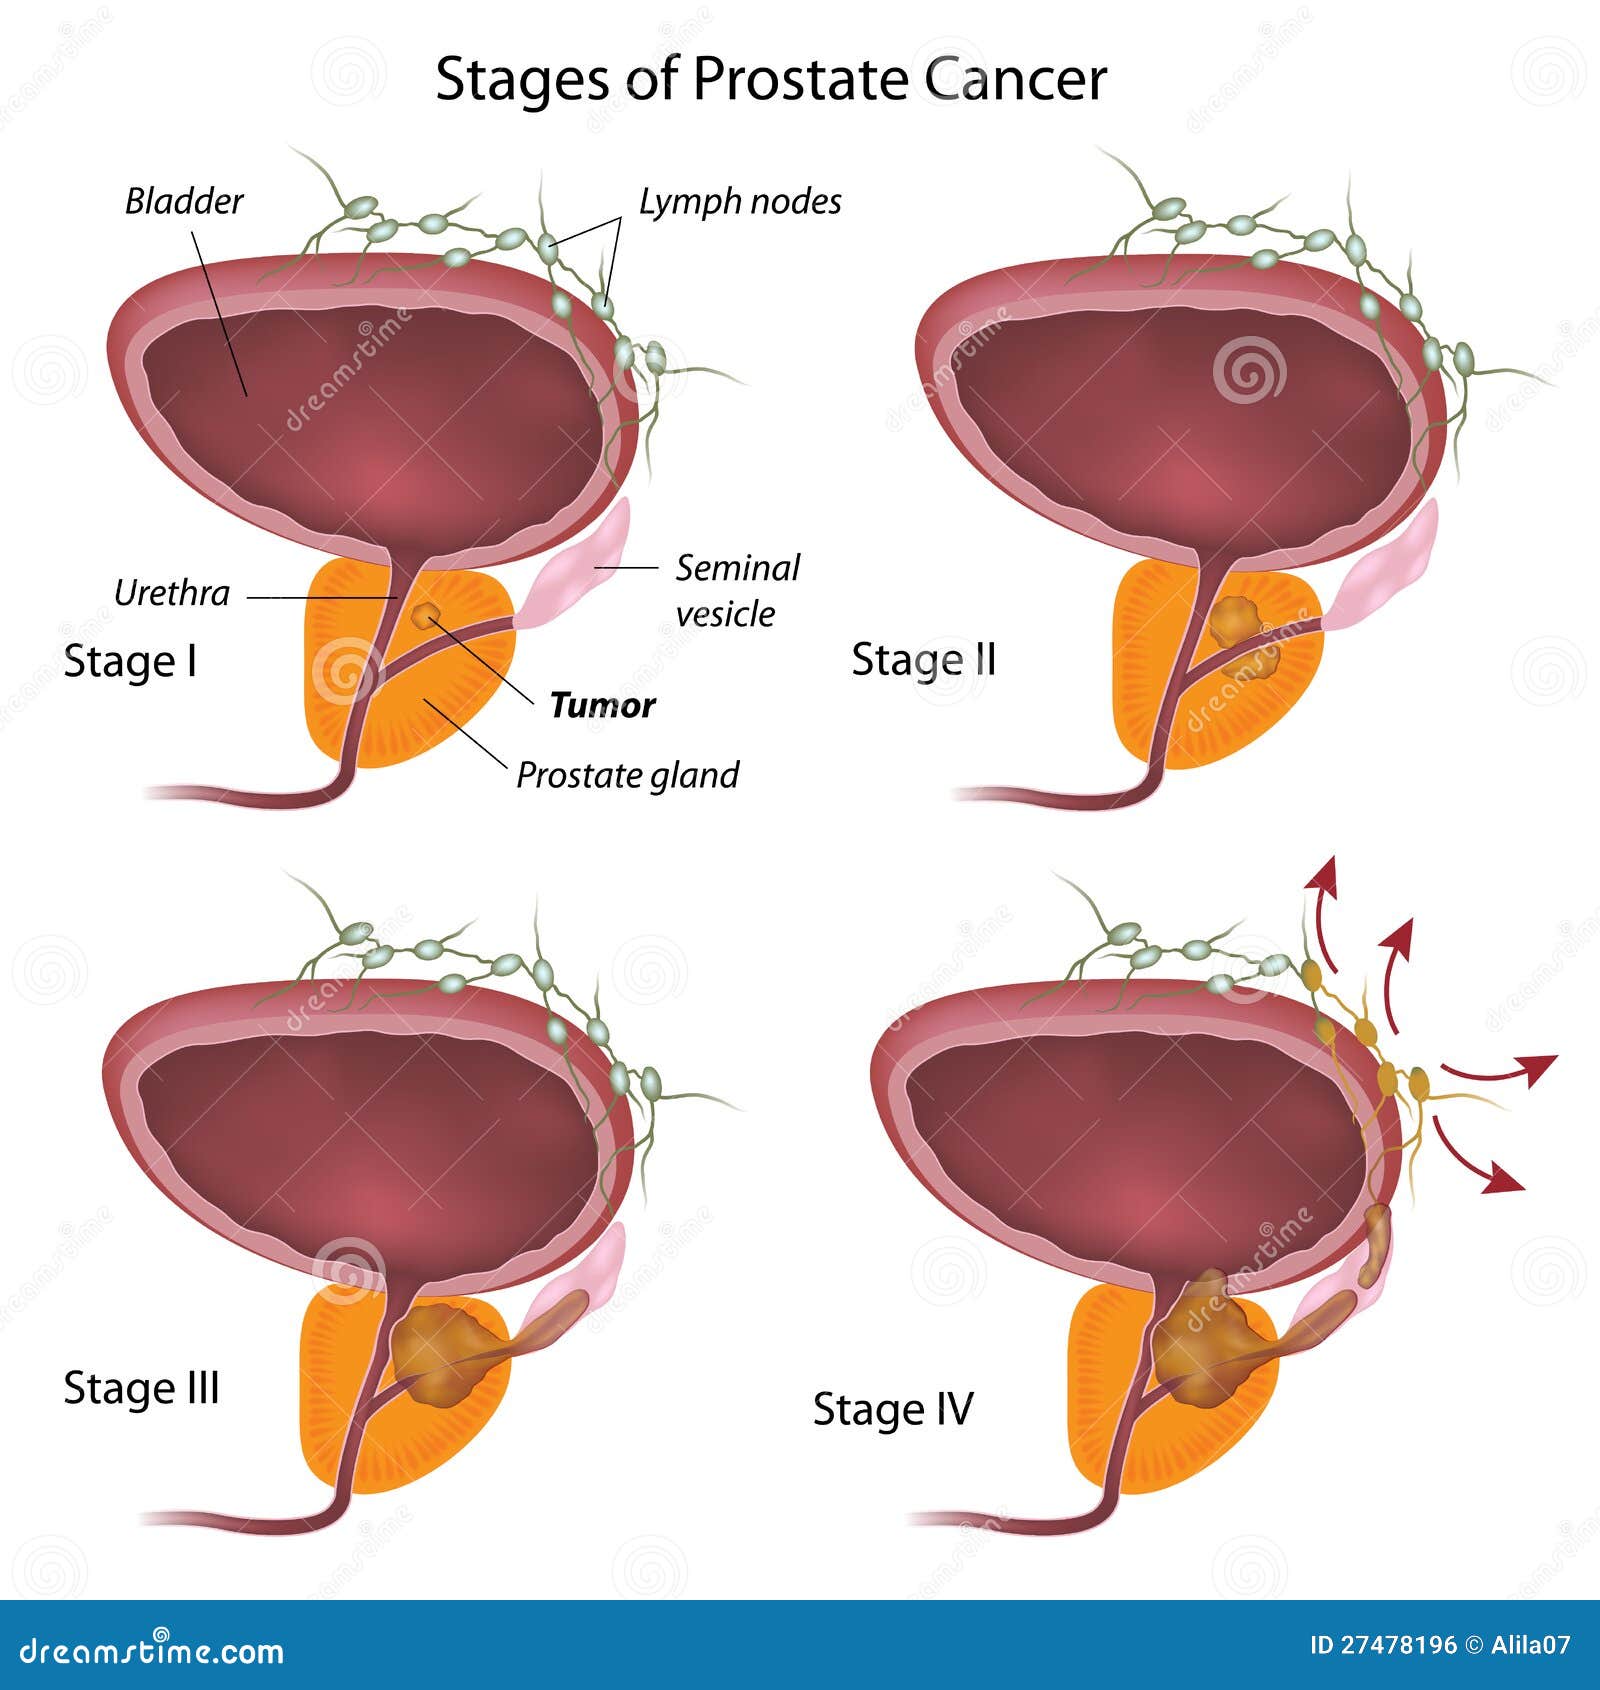 comment prendre soin de sa prostate